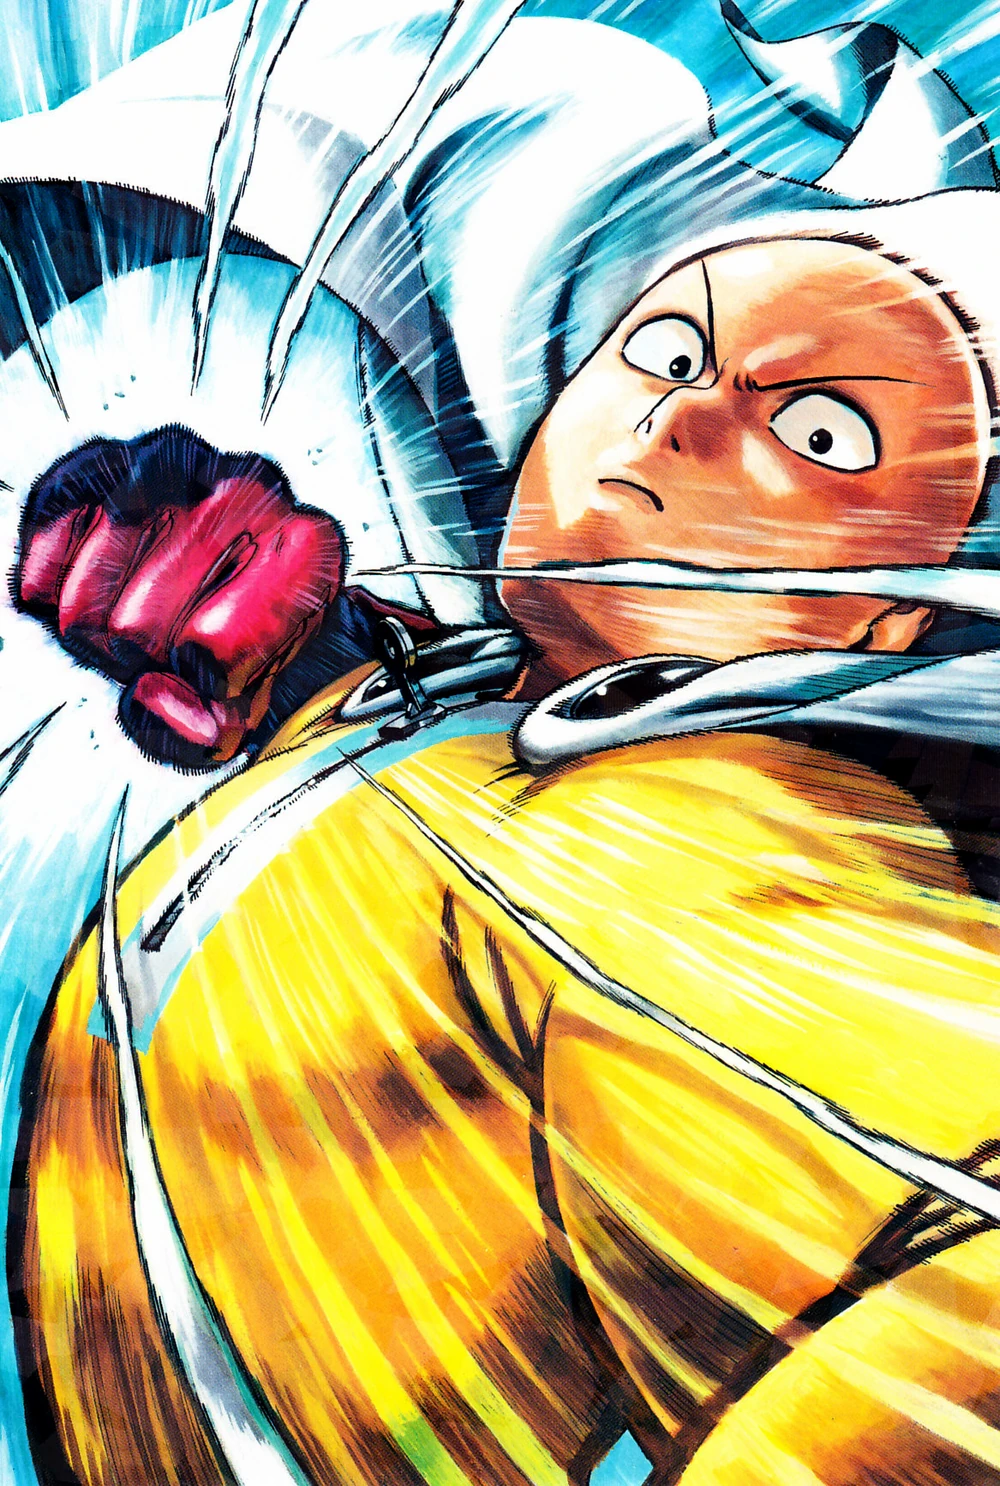 Saitama libera seu poder na arte da capa com tema One-Punch Man de Yusuke Murata para Weekly Shonen Jump Vol. 8 (2015), Shueisha